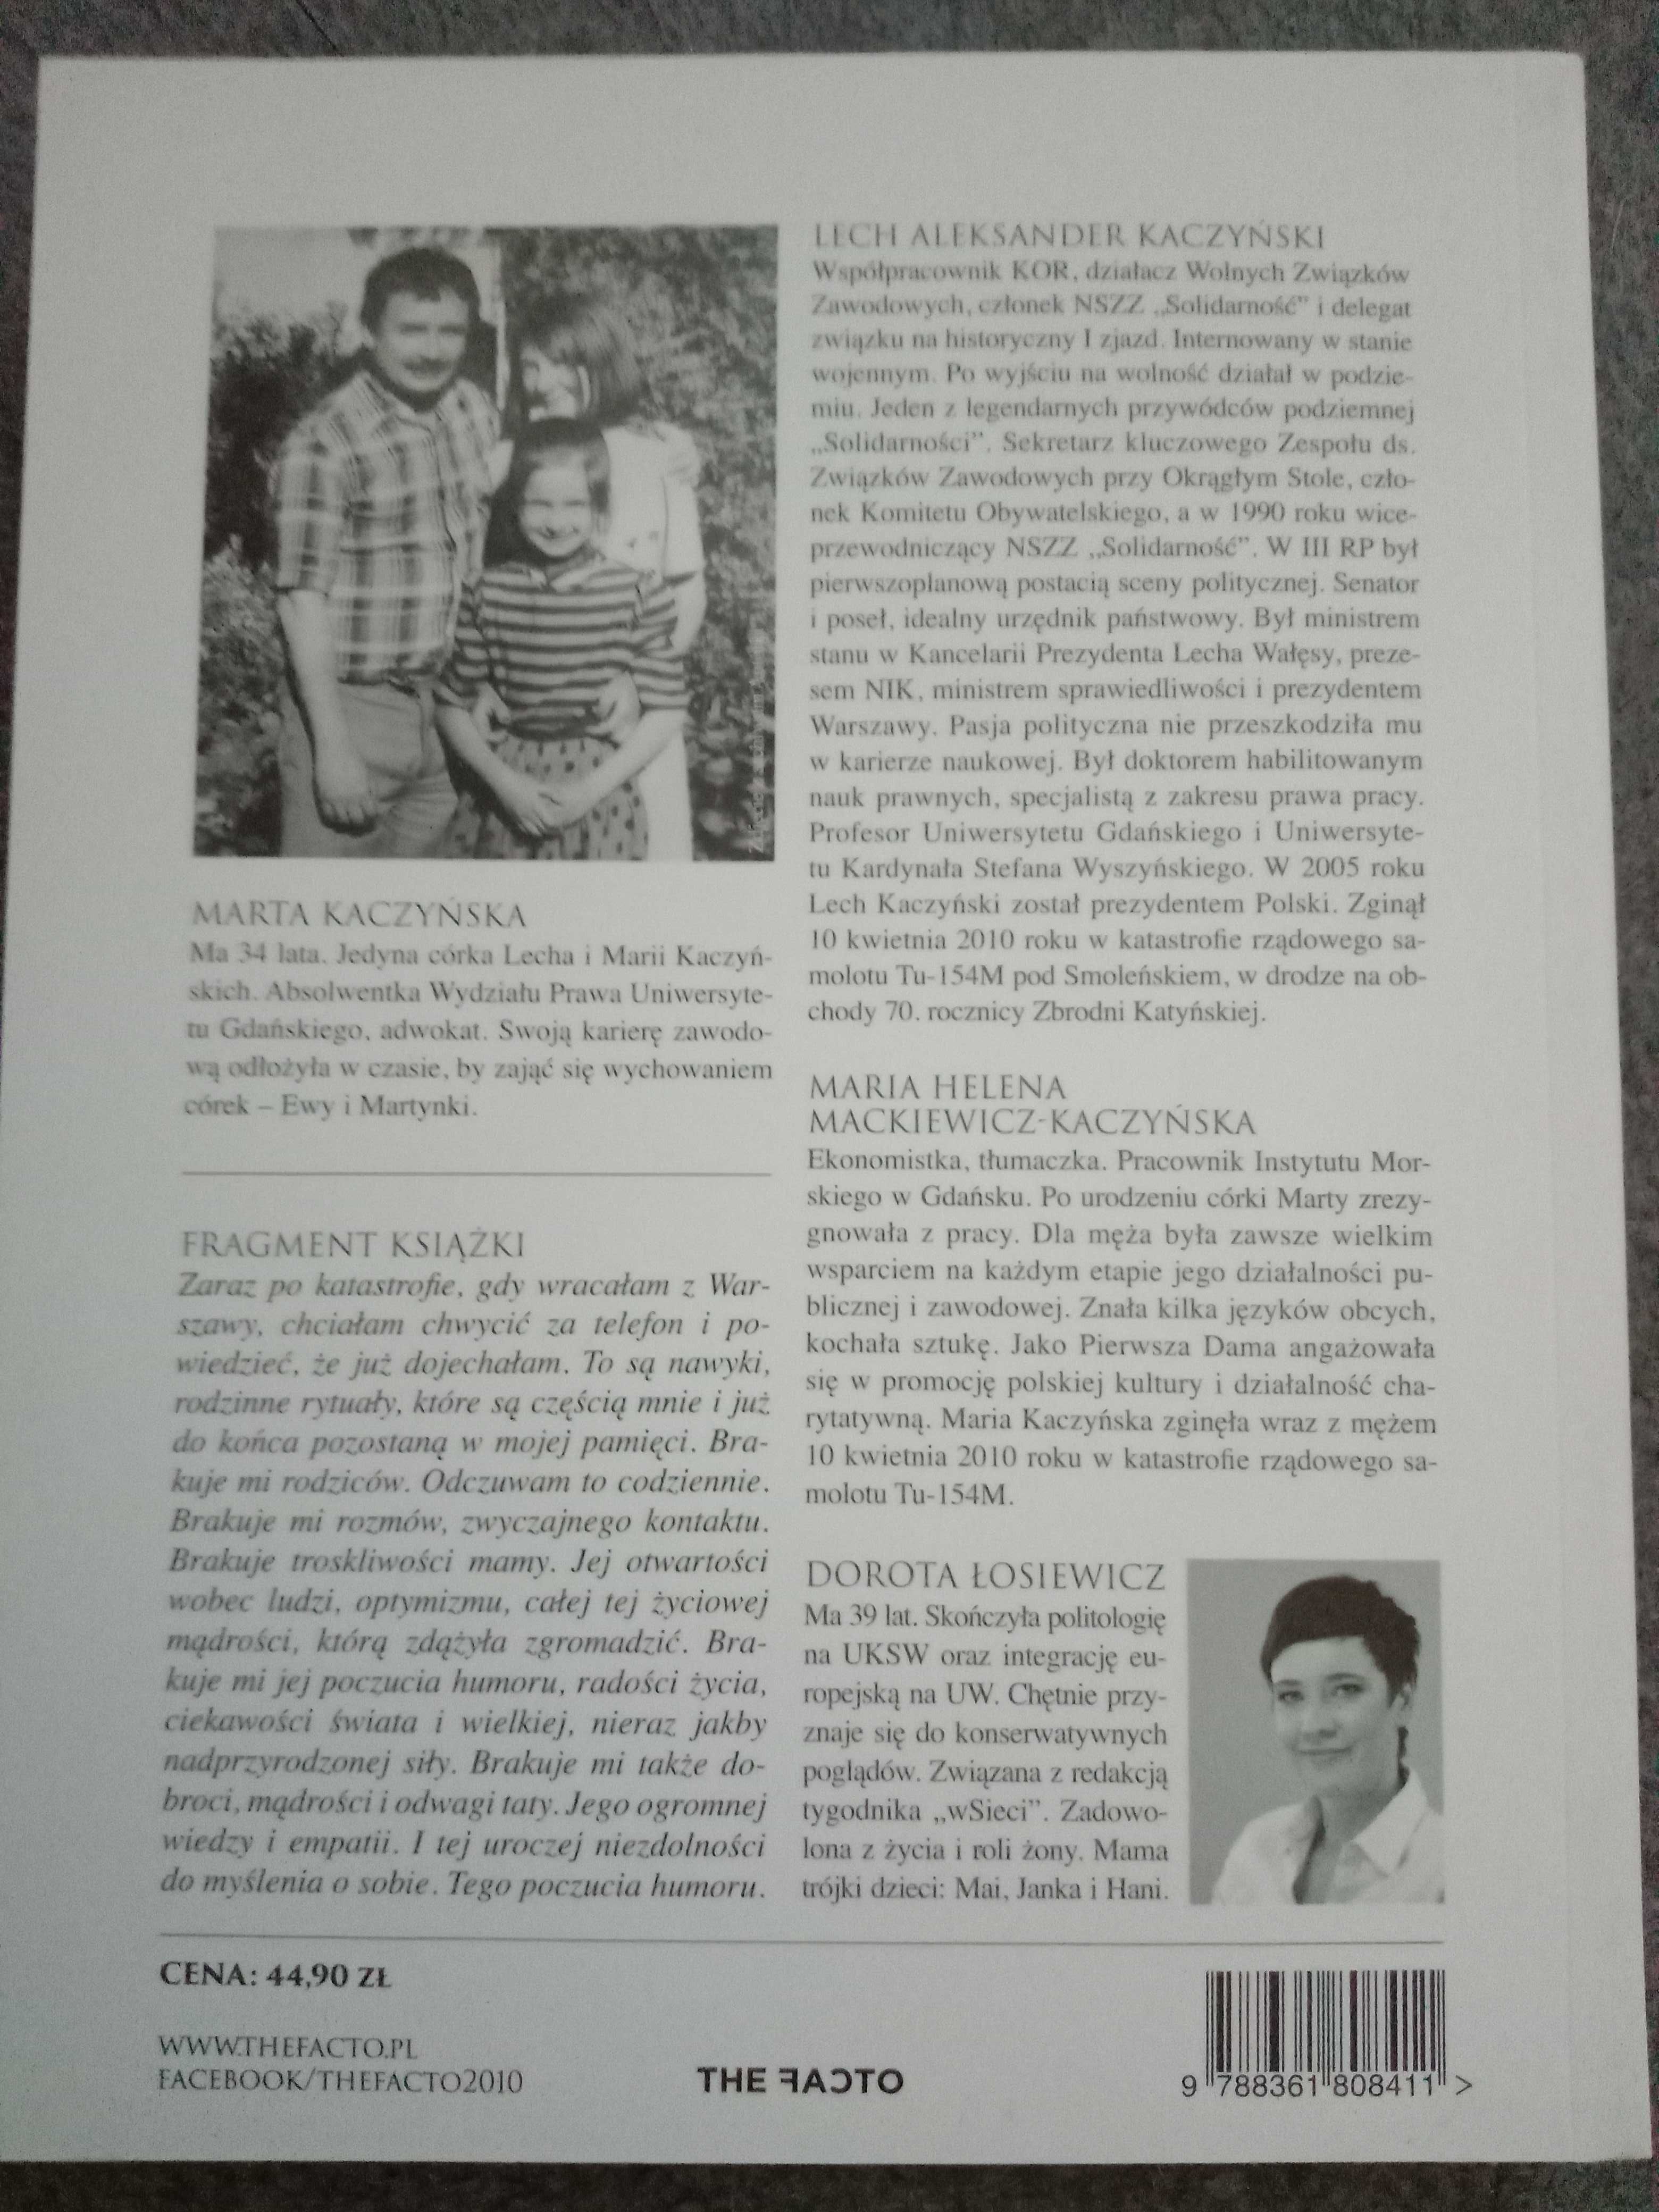 Biografia Moi rodzice Marta Kaczyńska Lech i Maria Kaczyńscy Łosiewicz